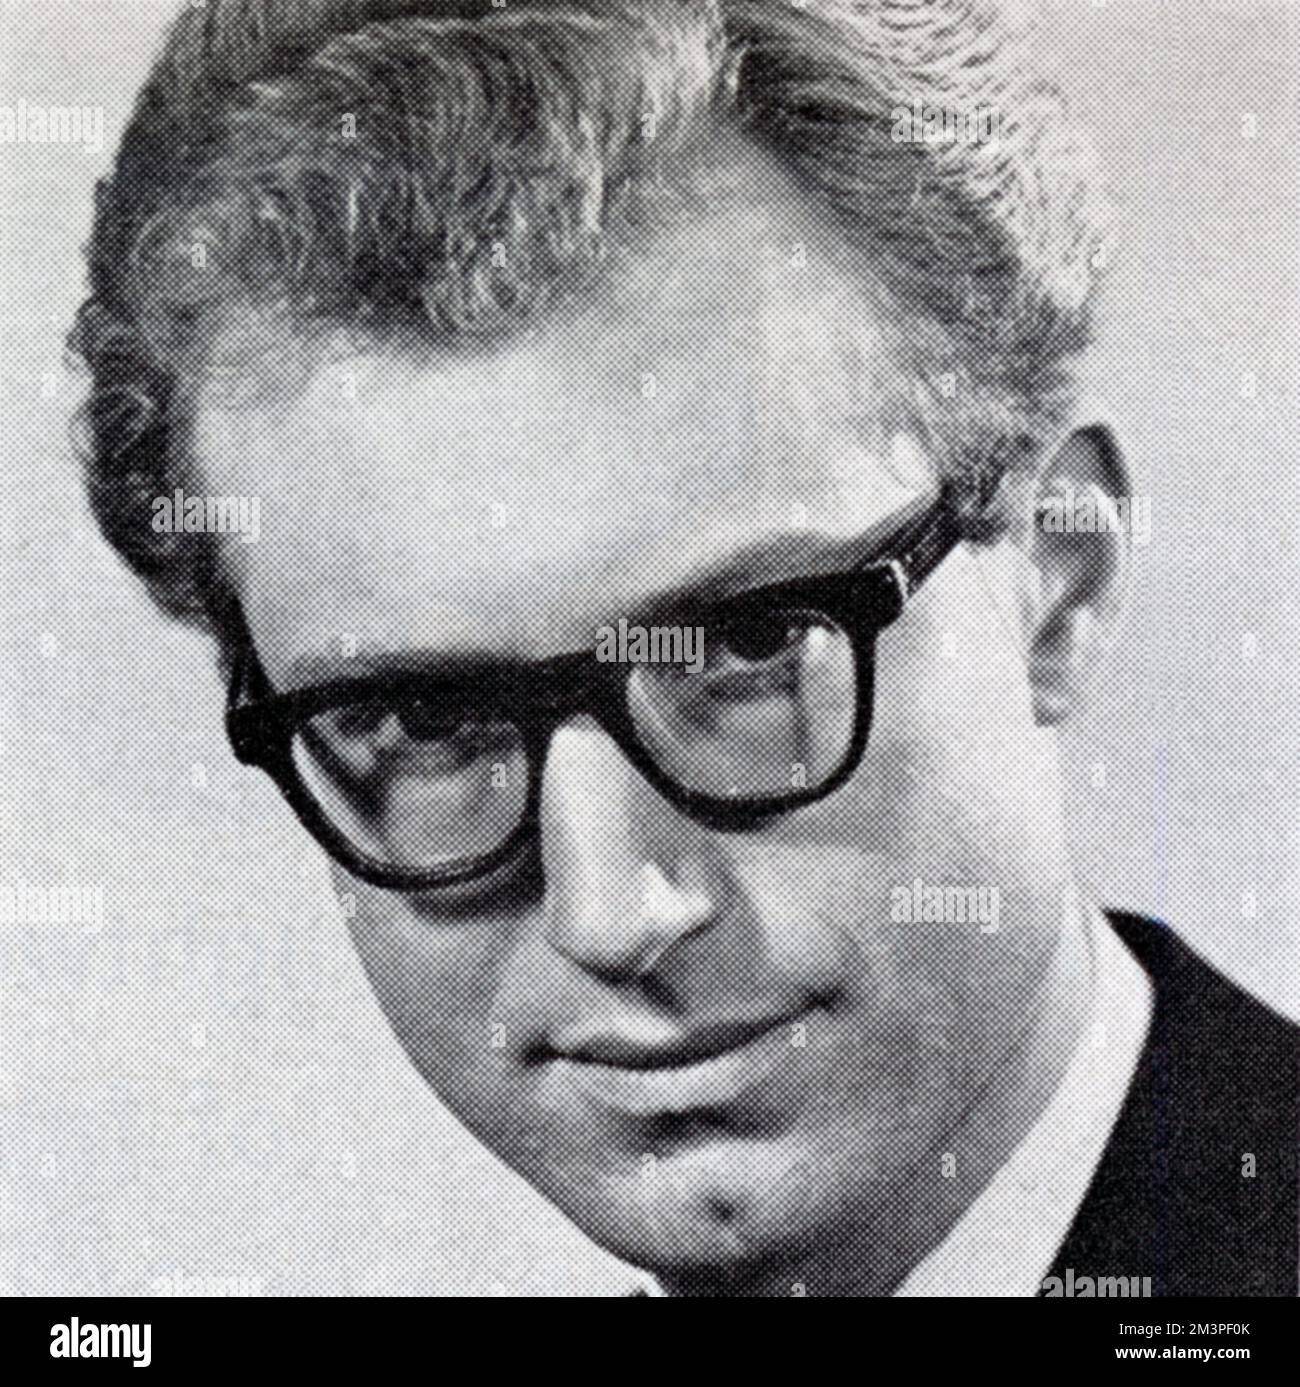 Bamber Gascoigne (1935- ), britischer Fernsehmoderator und Autor, bekannt als der ursprüngliche Quizmaster bei der "University Challenge". Datum: 1966 Stockfoto